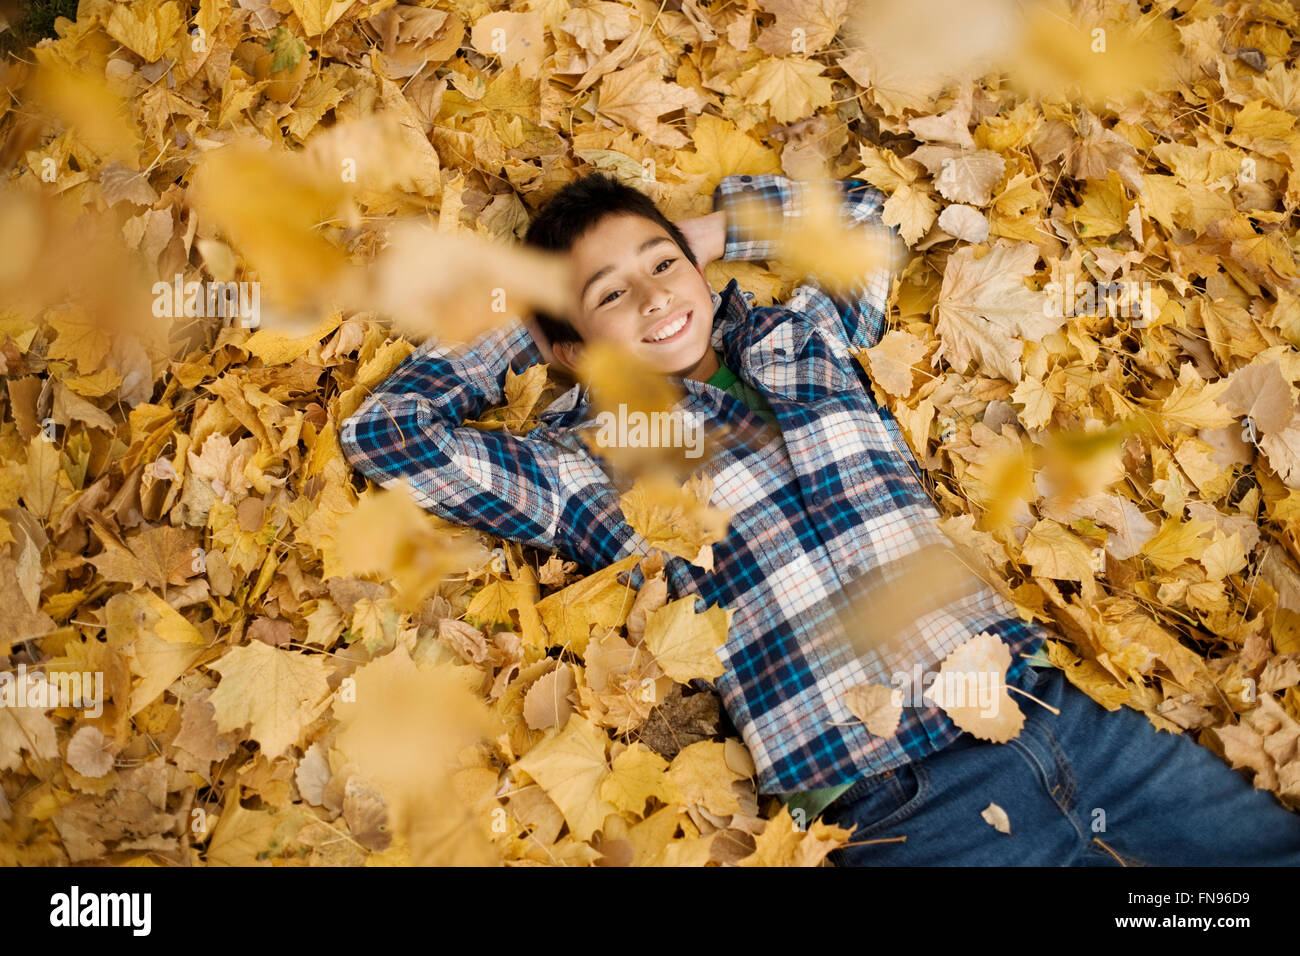 Ein Teenager in ein kariertes Hemd mit seinen Armen hinter dem Kopf auf einem Haufen Herbstlaub liegend. Stockfoto